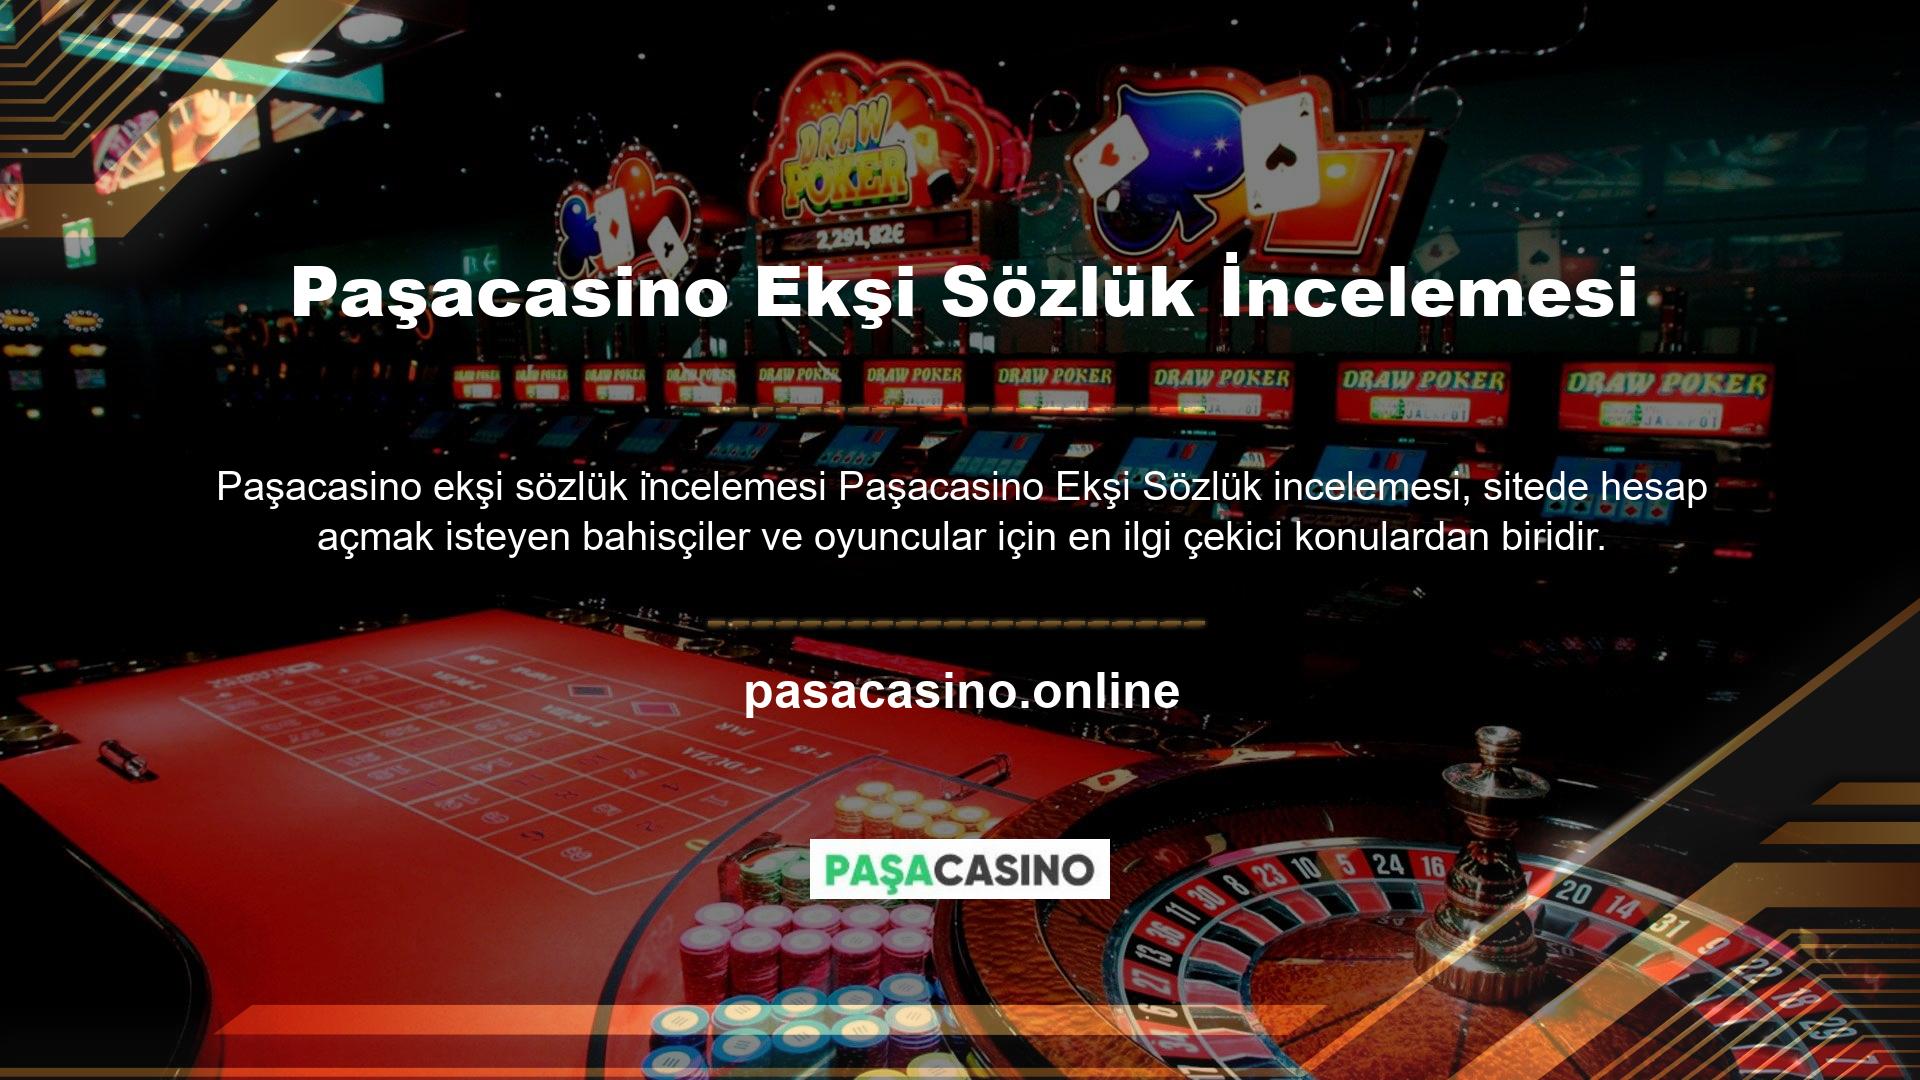 Tüm casino sitelerinde hesap açmadan önce başta Ekşi Sözlük olmak üzere büyük casino forumlarını ve şikayet sitelerini kontrol etmelisiniz